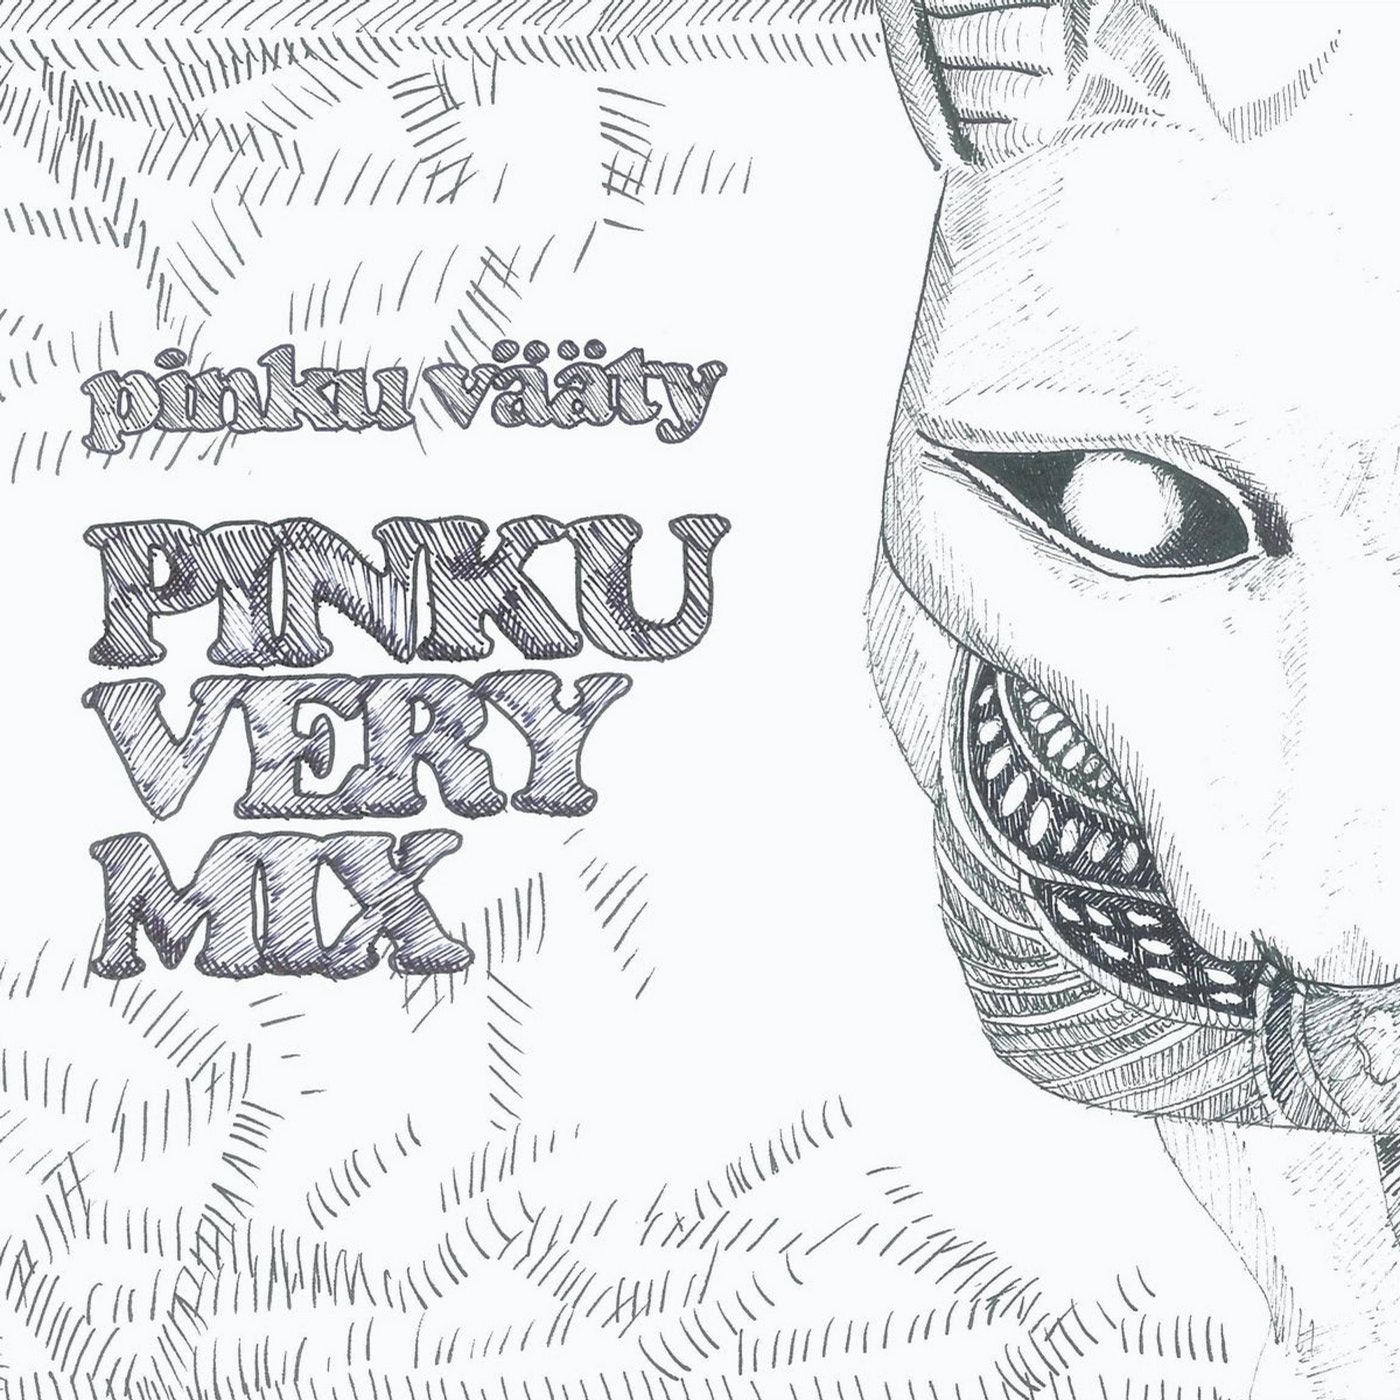 Pinku Very Mix